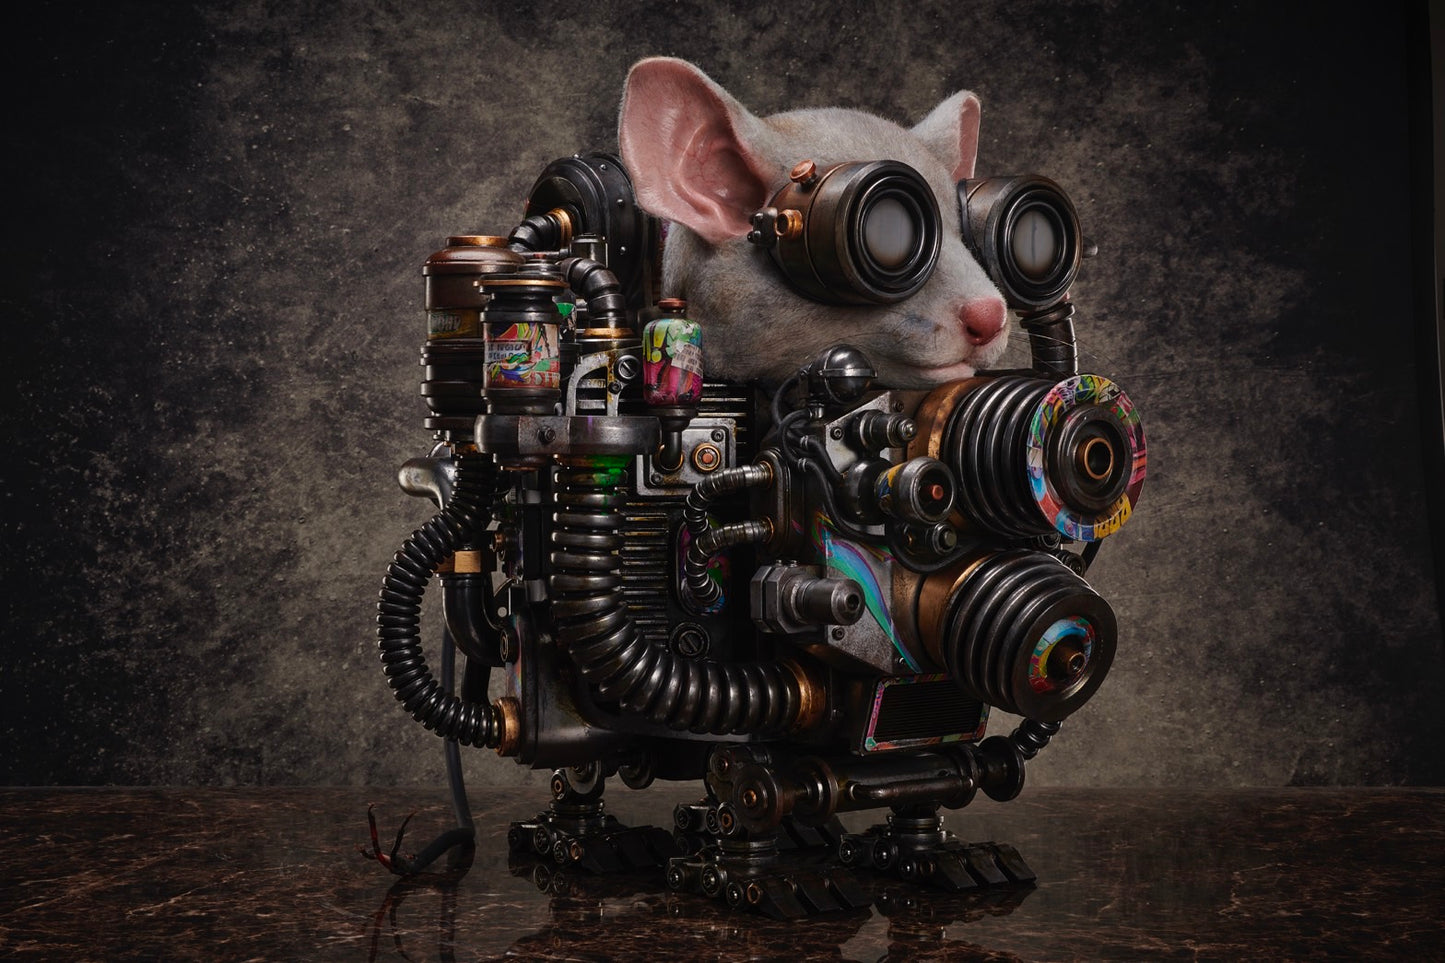 Rat Engine: II